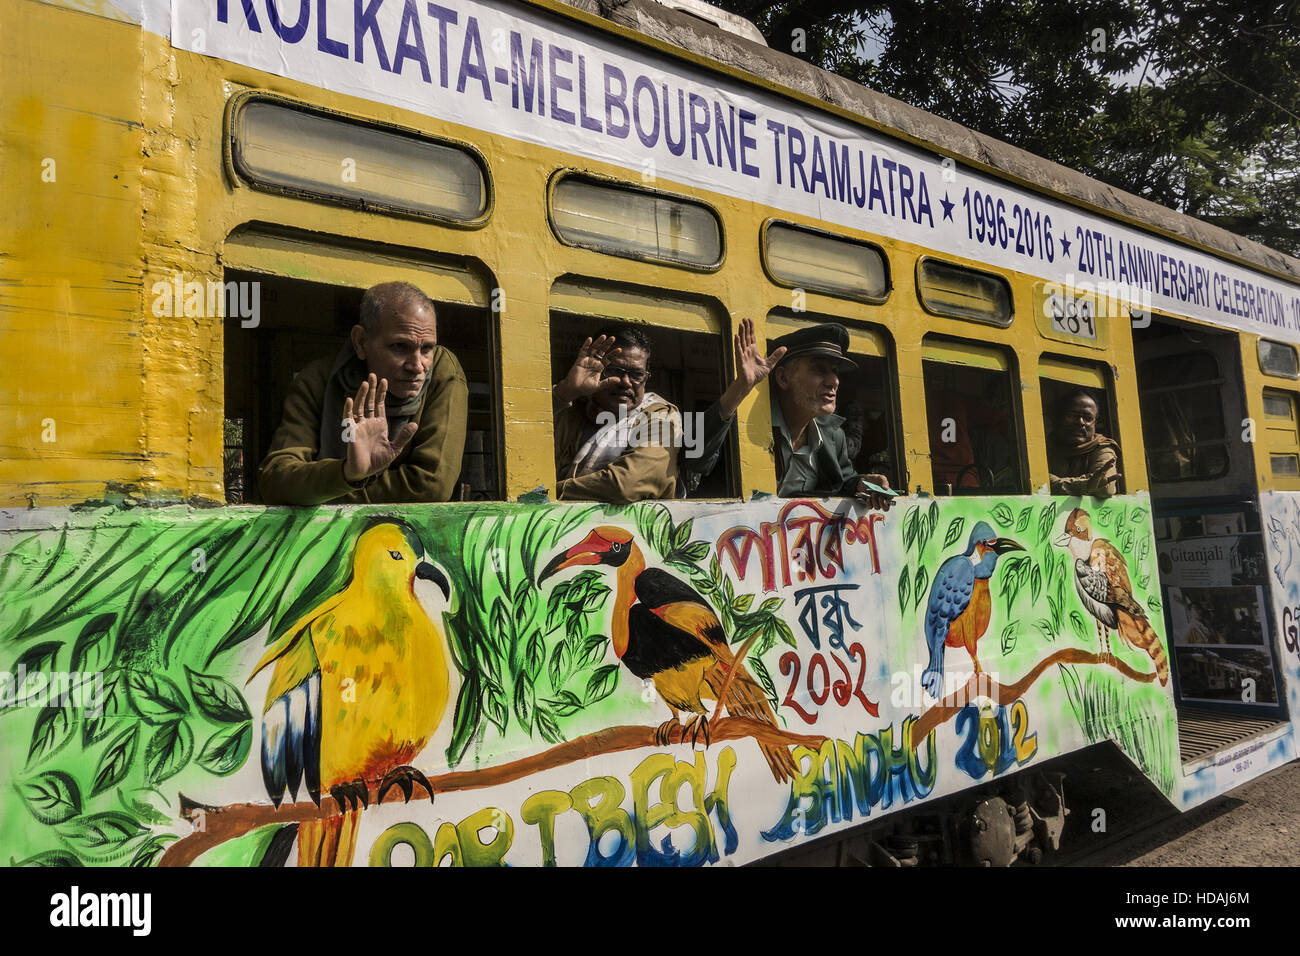 (161210) -- NEW DELHI, 10 décembre 2016 (Xinhua) -- Robert D'Andrew (3L), un conducteur de tramway d'Australie pose avec ses homologues indiens au cours de la célébration du 20e anniversaire de l'Kolkata-Melbourne amitié tramways à Calcutta, capitale de l'Est de l'état indien du Bengale occidental, le 10 décembre 2016. L'événement célèbre le caractère distinctif des cultures du tramway de Melbourne en Australie et Kolkata en Inde grâce à des collaborations entre les entreprises et leur tramway tram-aimer les collectivités. (Xinhua/Tumpa Mondal) (SXK) Banque D'Images